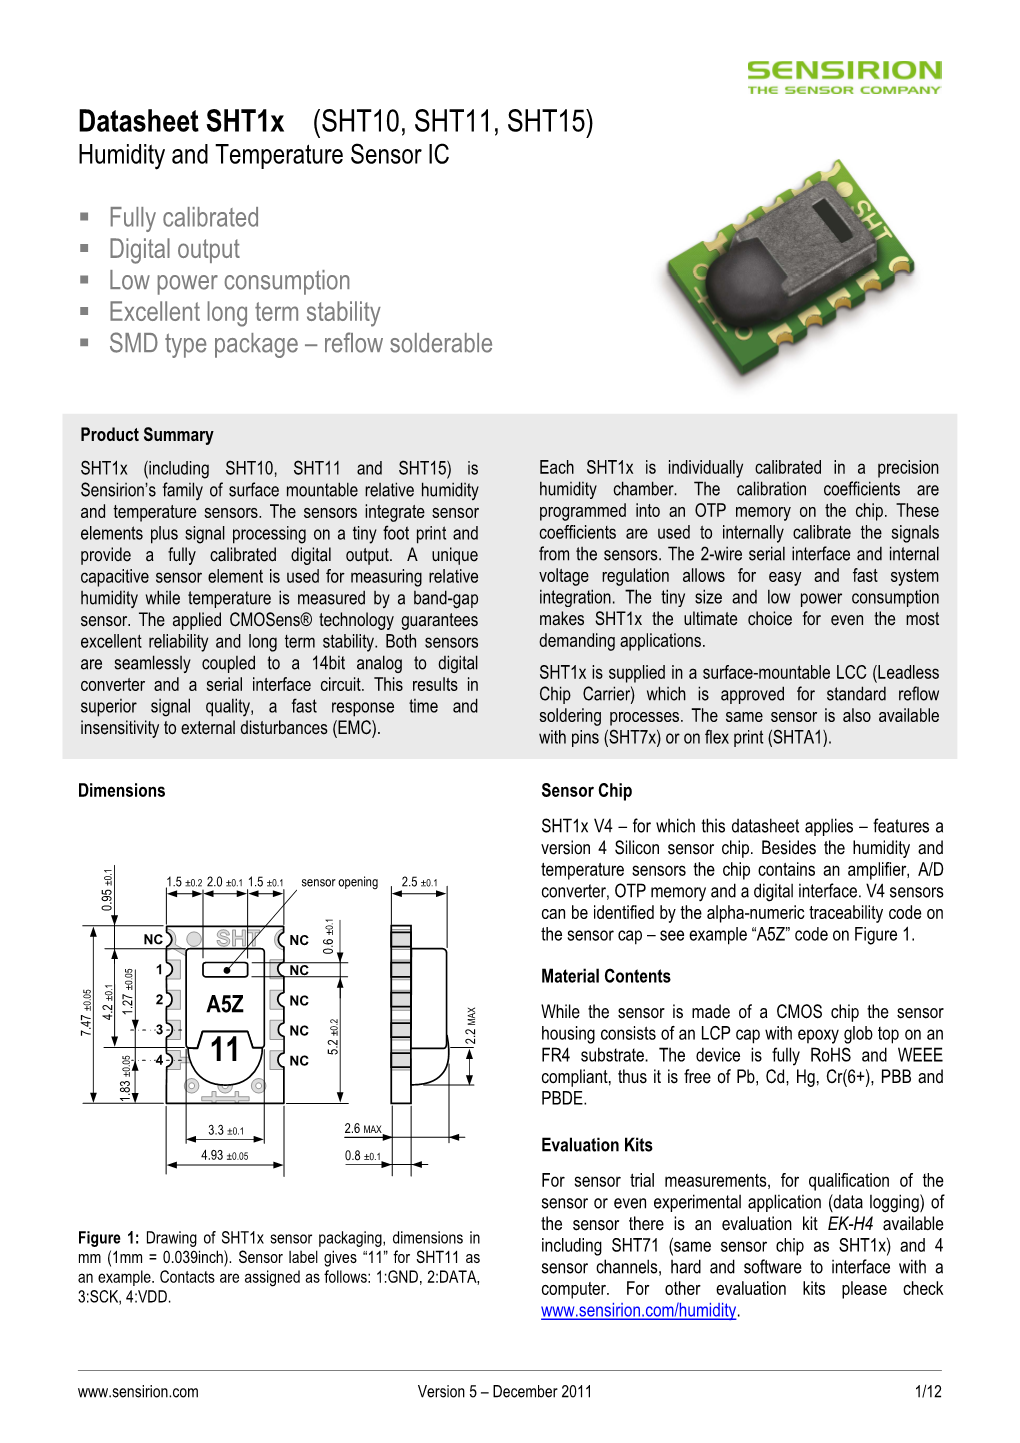 Datasheet Sht1x (SHT10, SHT11, SHT15) Humidity and Temperature Sensor IC